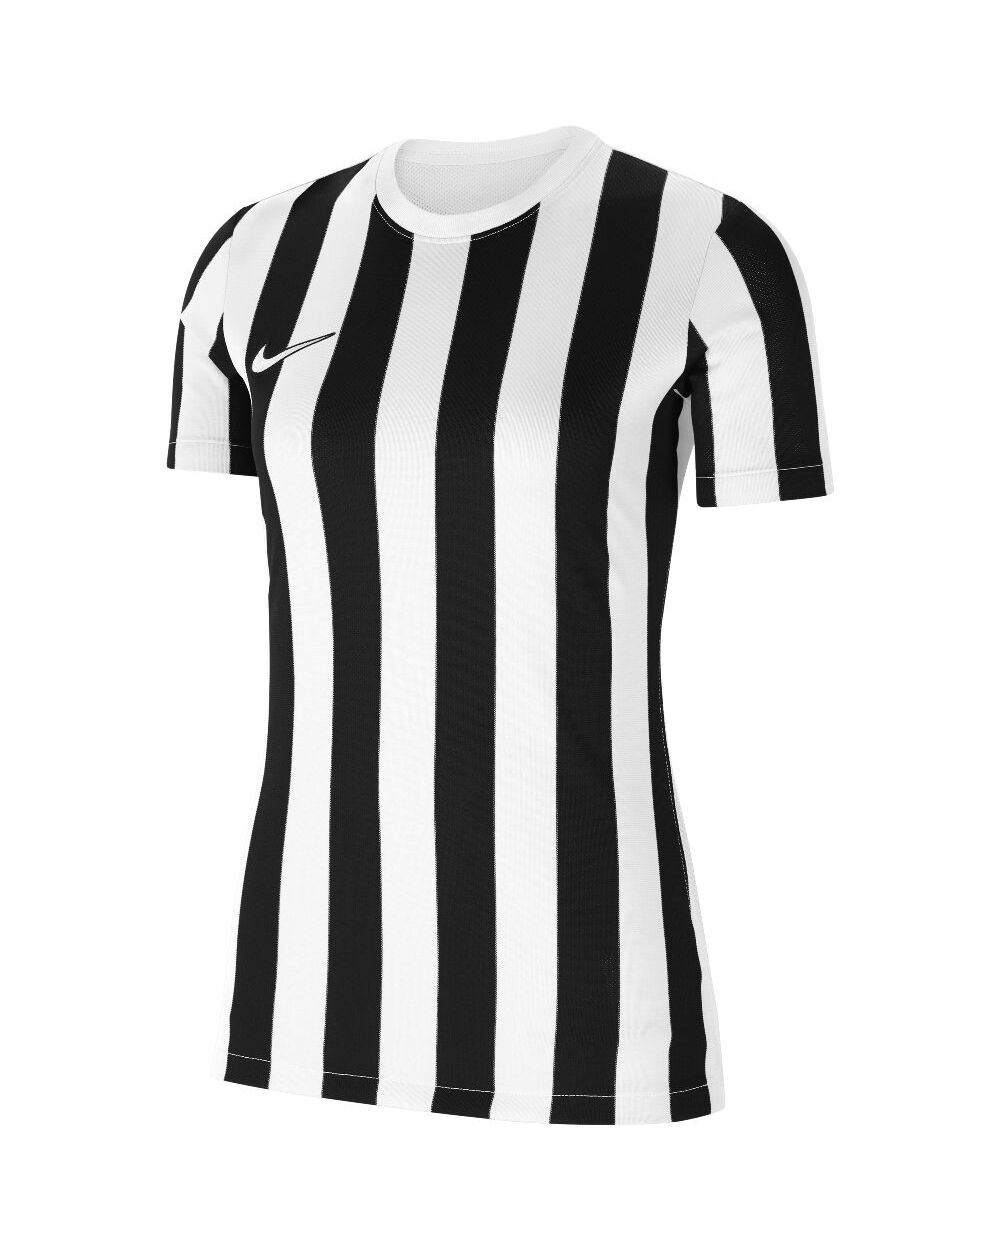 Nike Maglia Striped Division IV Bianco e Nero per Donne CW3816-100 XS